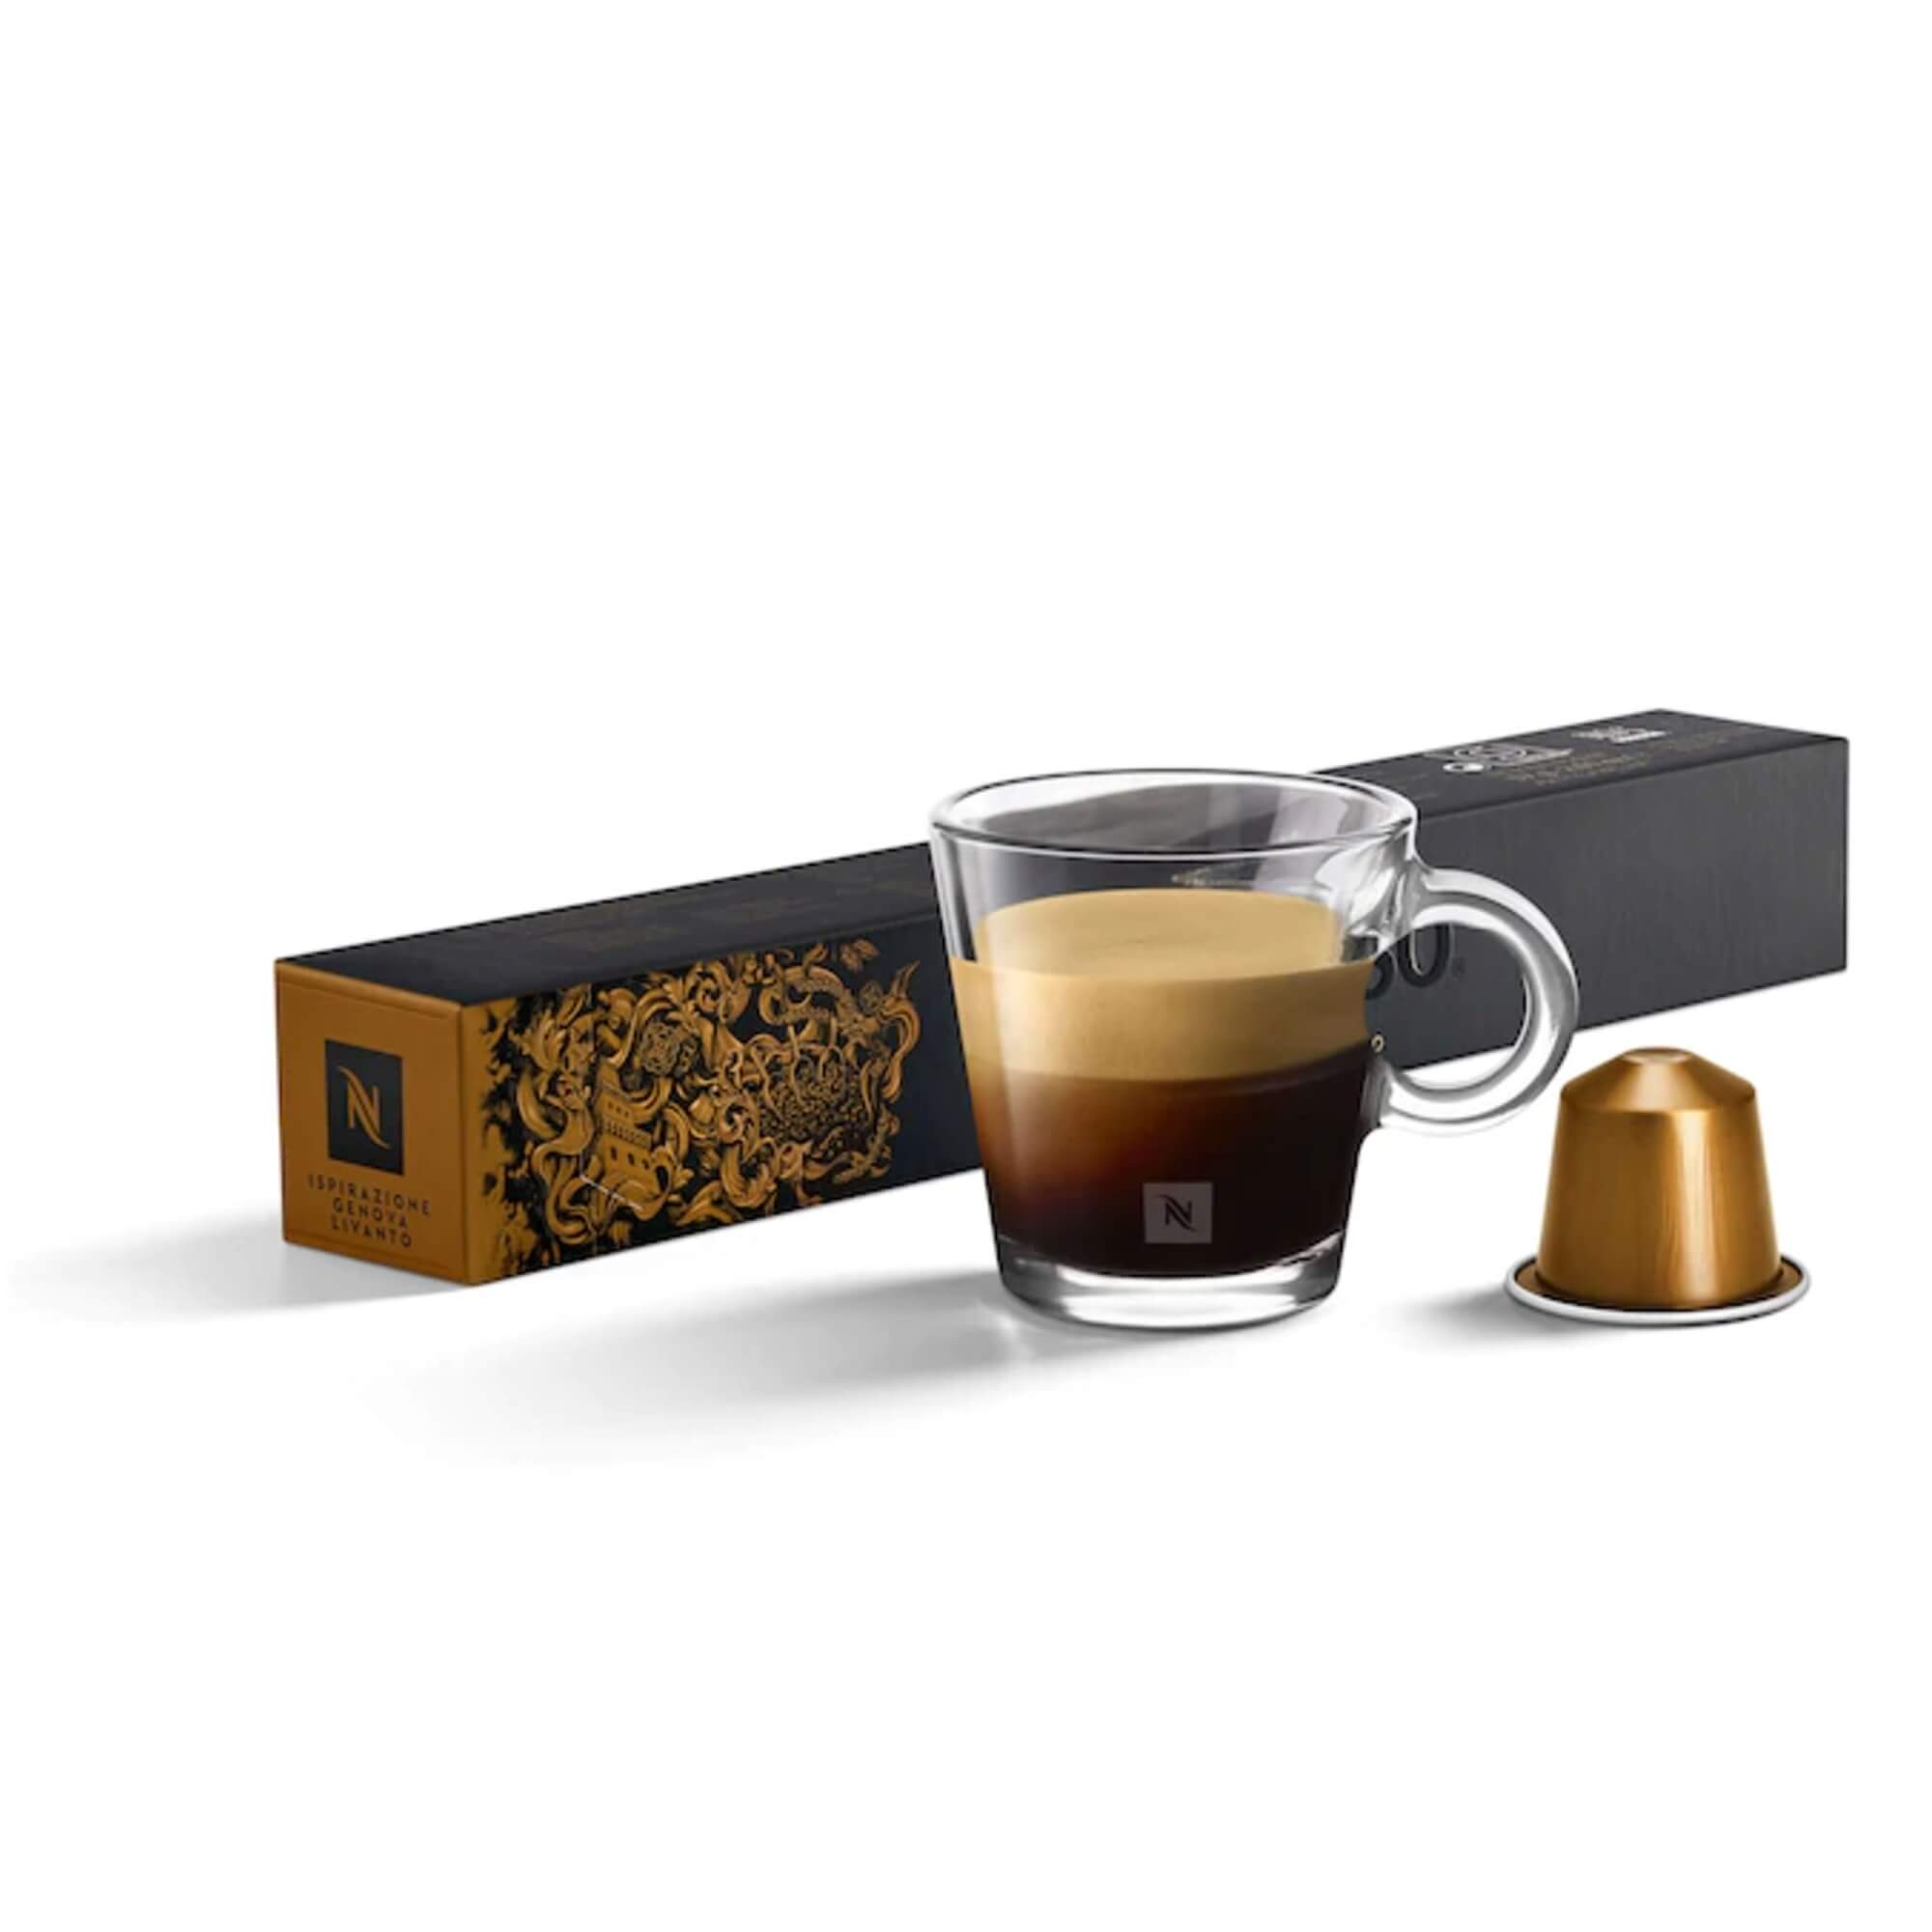 Livanto  Kaffee - runder und ausgewogener Espresso für 4.5 EUR